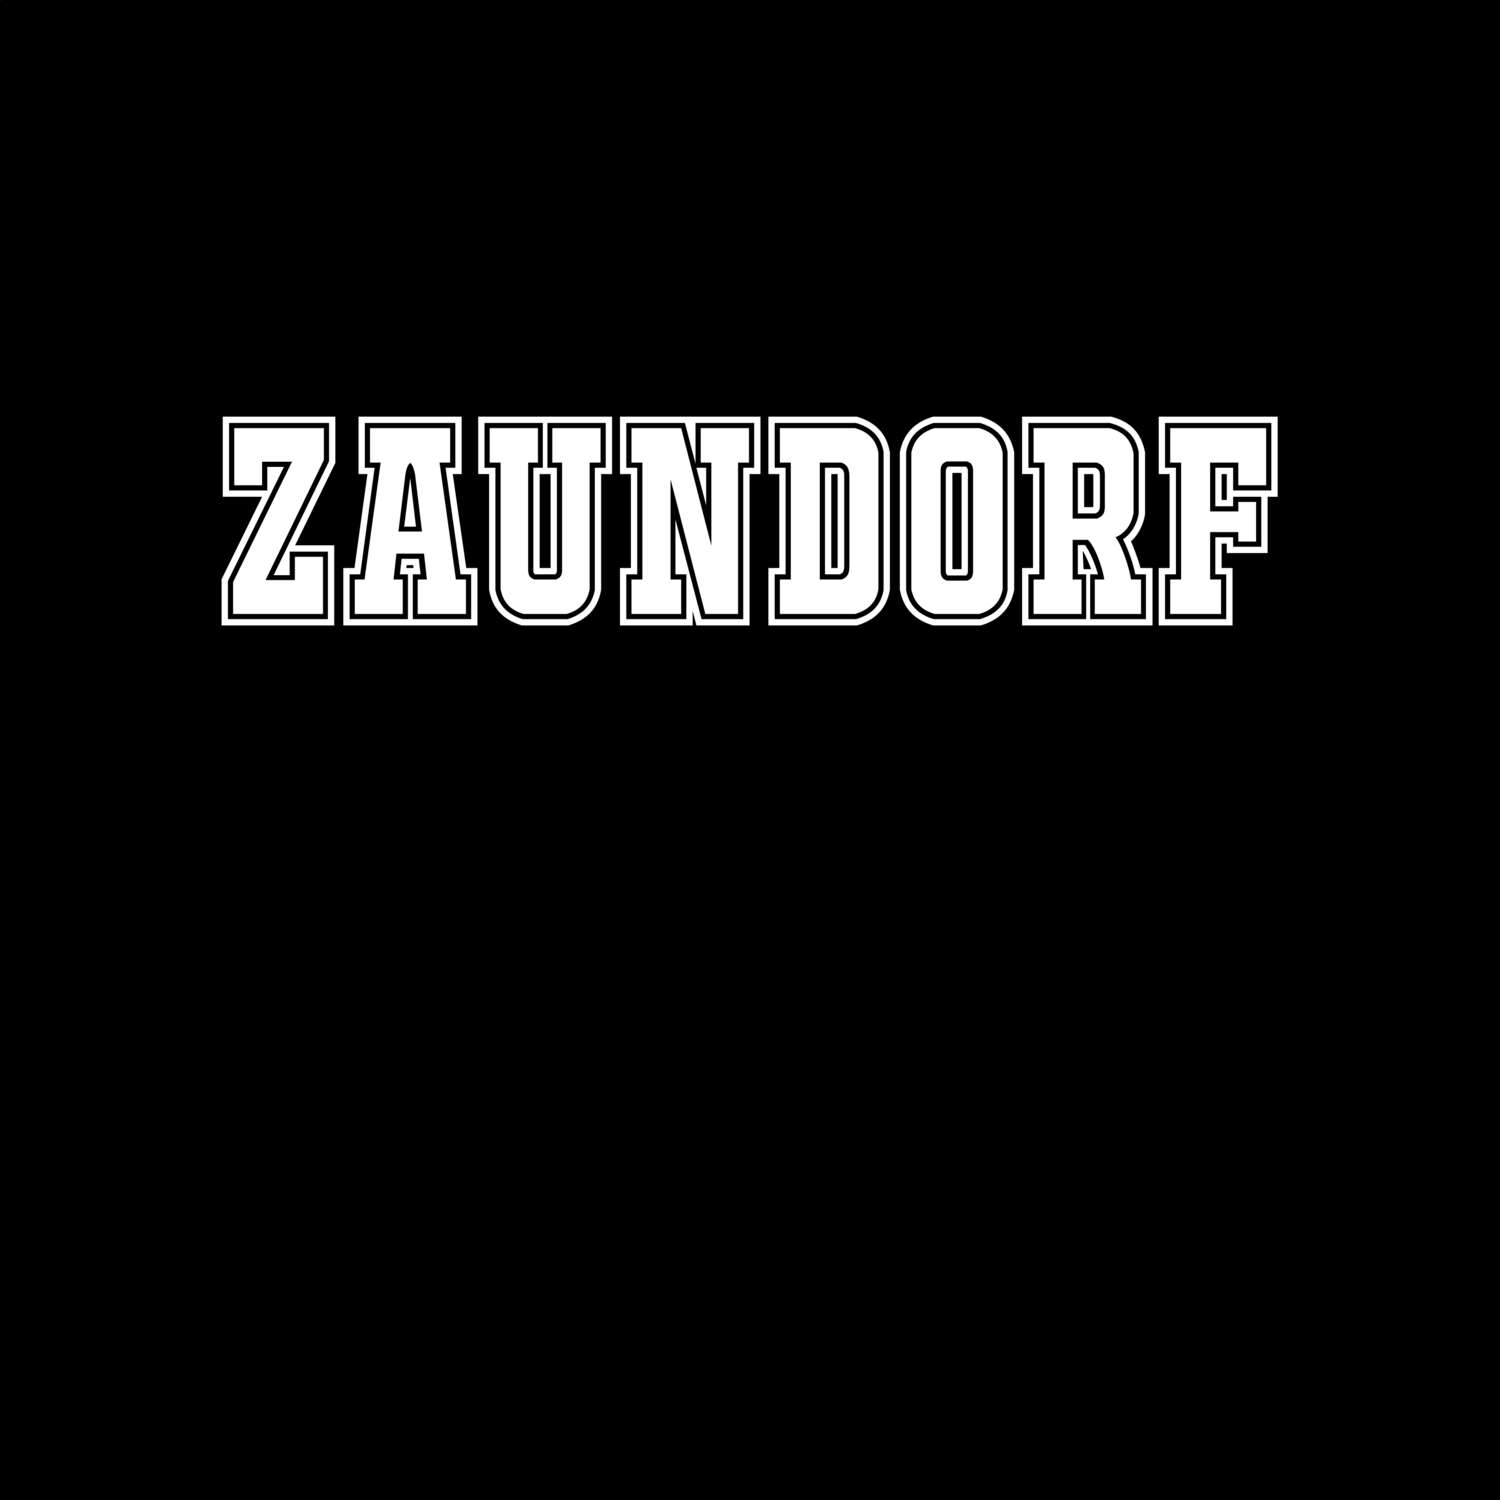 Zaundorf T-Shirt »Classic«